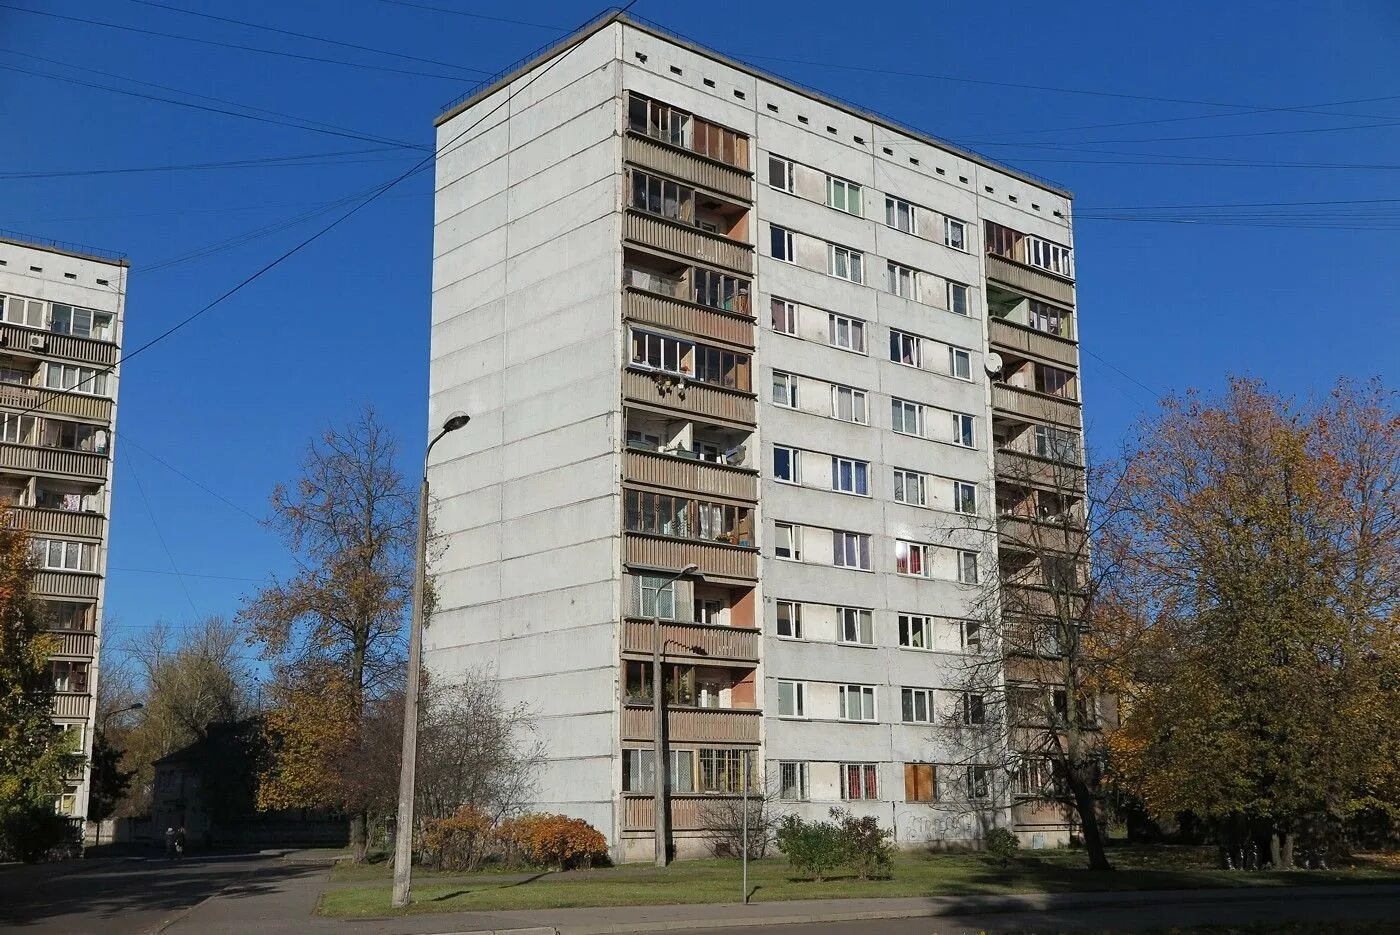 Панельный дом 9 этажка. Панельные девятиэтажки 80-х. Панельный дом 5 этажка. Советская 9 этажка.